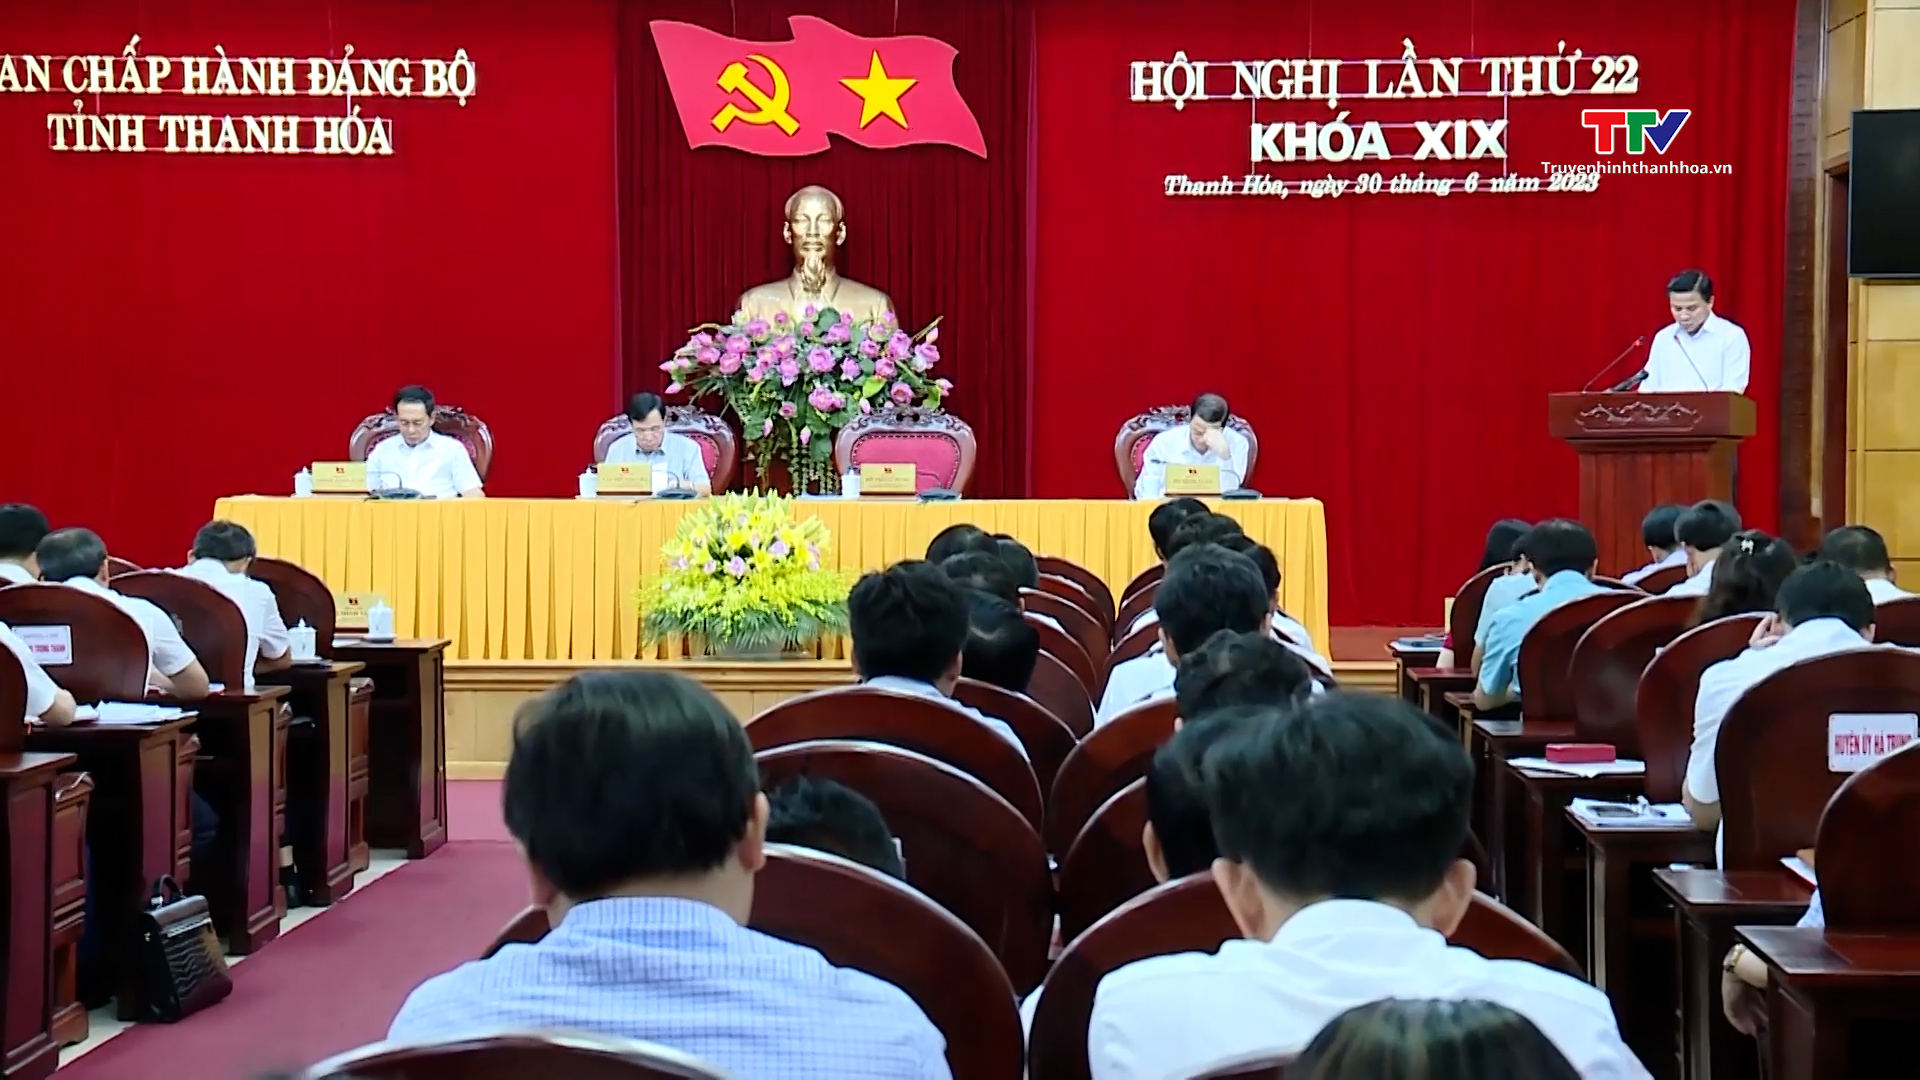 Hội nghị lần thứ 22 Ban Chấp hành Đảng bộ tỉnh khoá XIX - Ảnh 10.